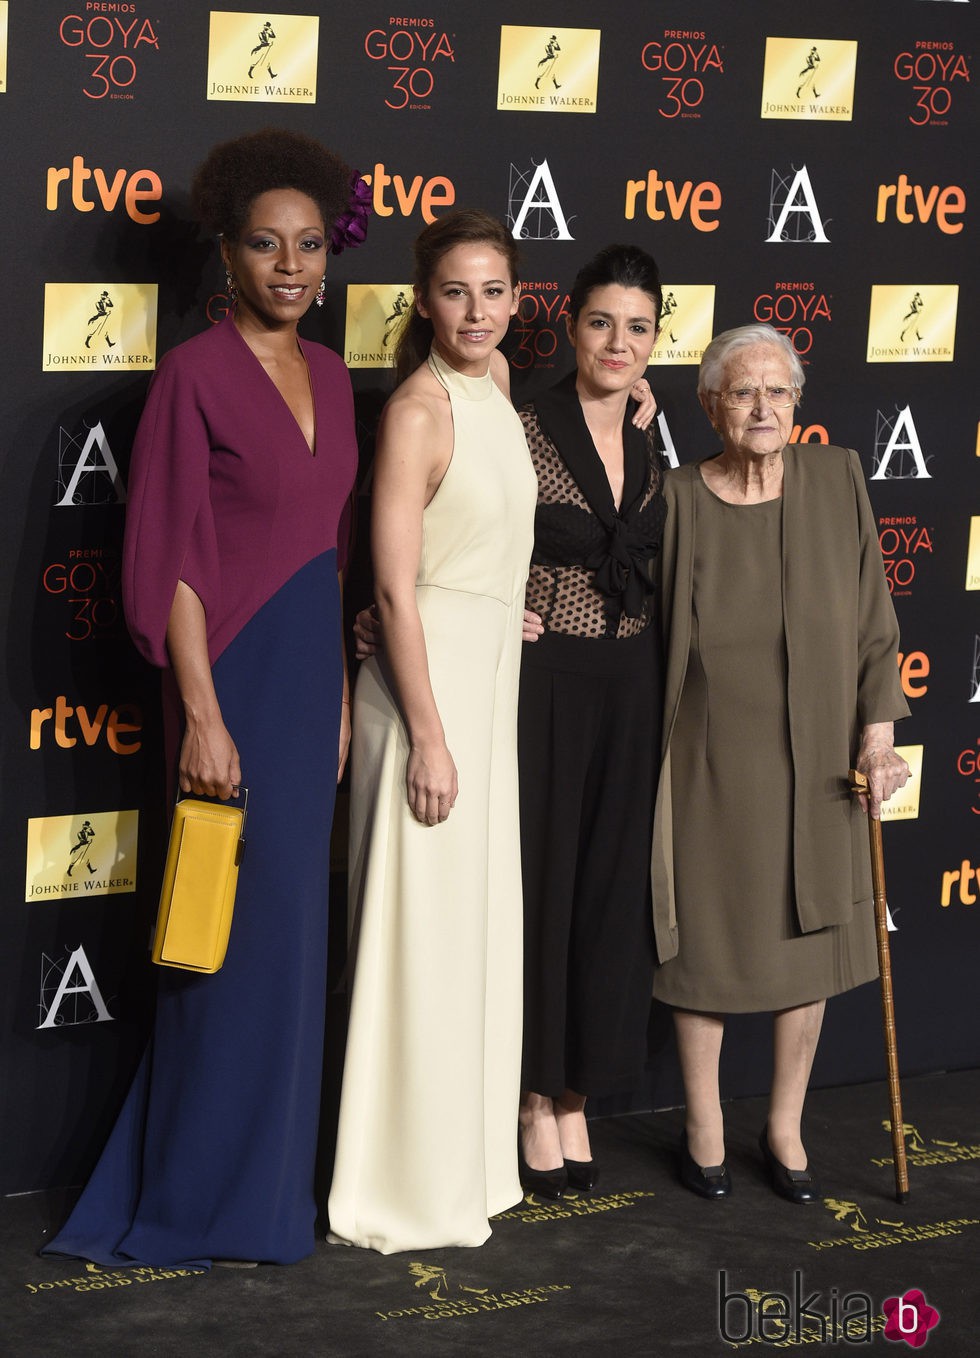 Irene Escolar, Yordanka Ariosa, Antonia Guzmán and Iraia Elías en la cena de los nominados a los Premios Goya 2016